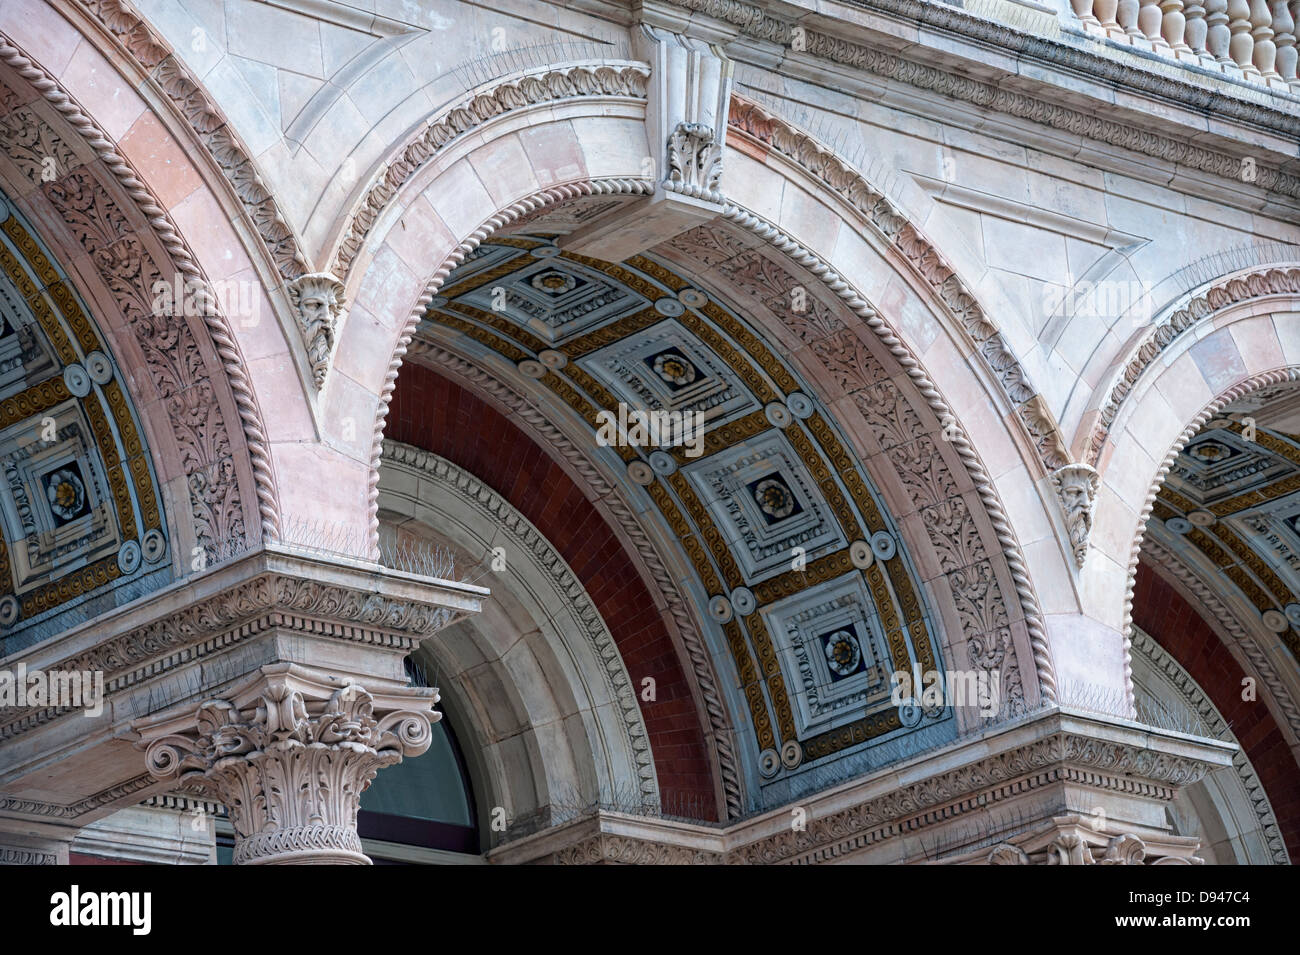 Detalle de los Arcos de la fachada de la V&A Museum. Foto de stock